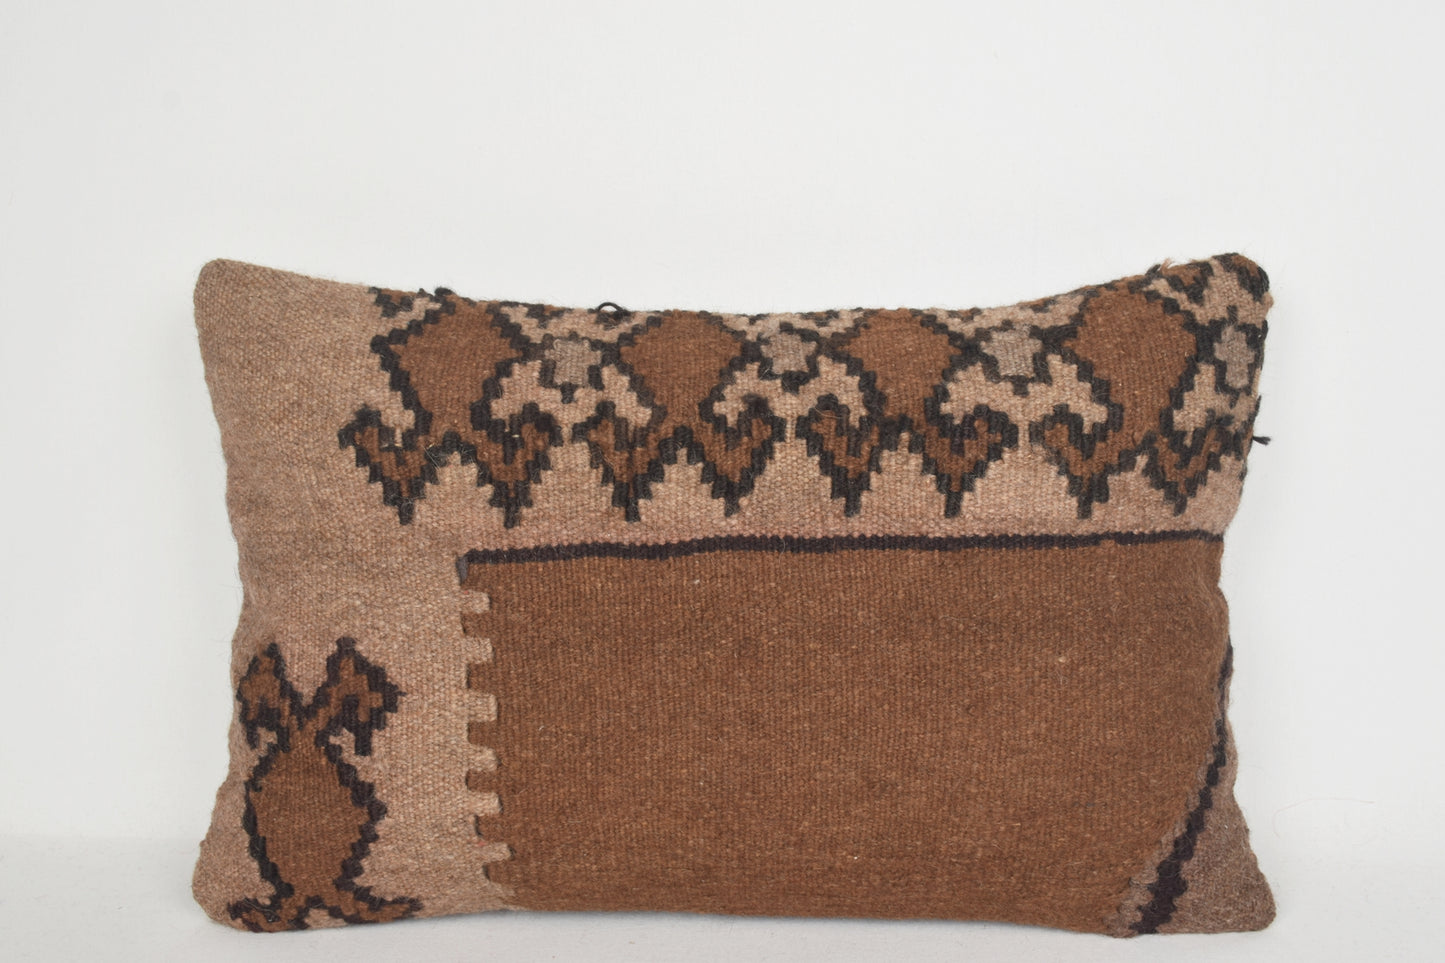 Kilim Outdoor Pillows E00067 Lumbar Knit Traditional Moroccan